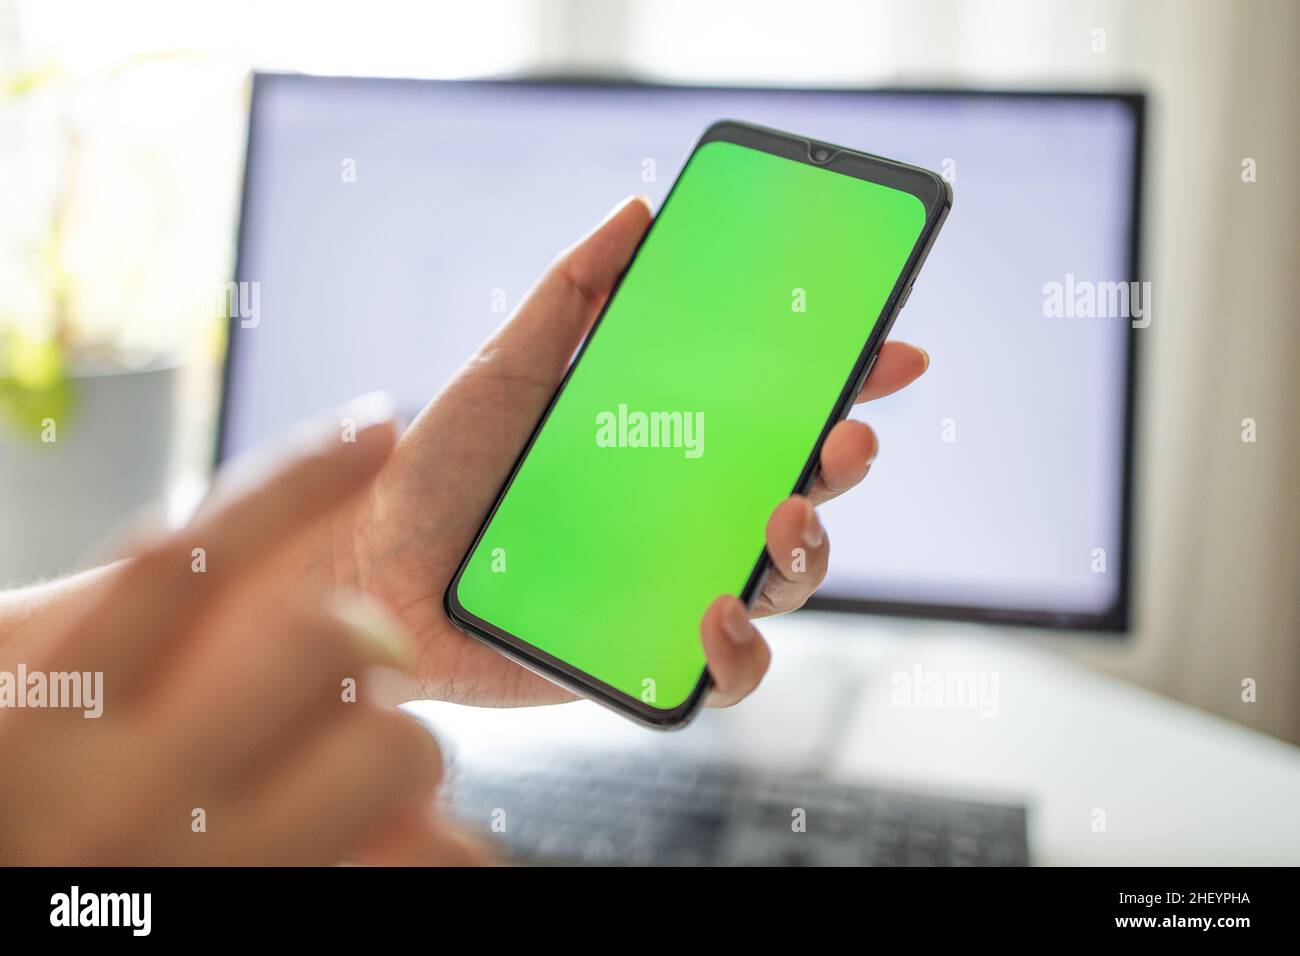 Smartphone avec écran vert vertical en tram chroma clé smartphone technologie téléphone cellulaire dans les mains de femme.Main avec écran de téléphone portable Banque D'Images